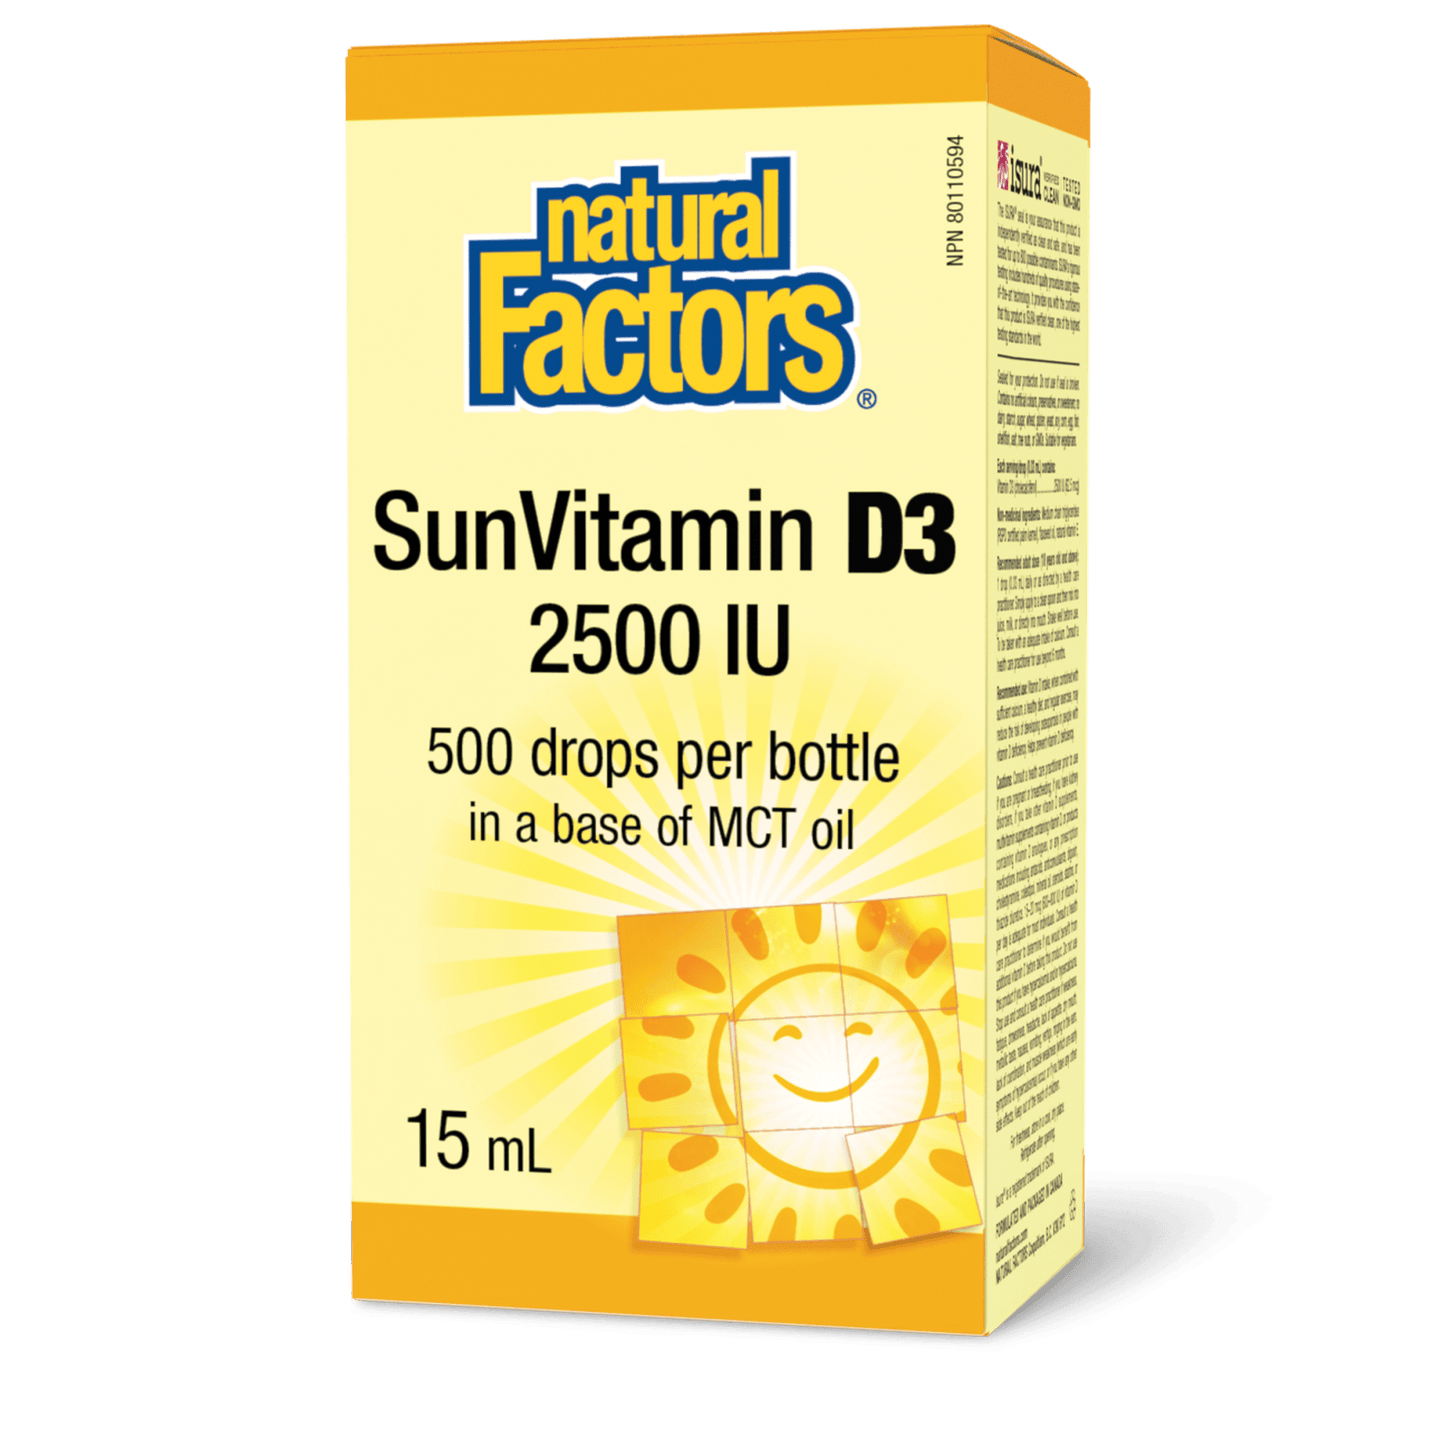 SunVitamin D3 Drops 2500 IU, Natural Factors|v|image|1077